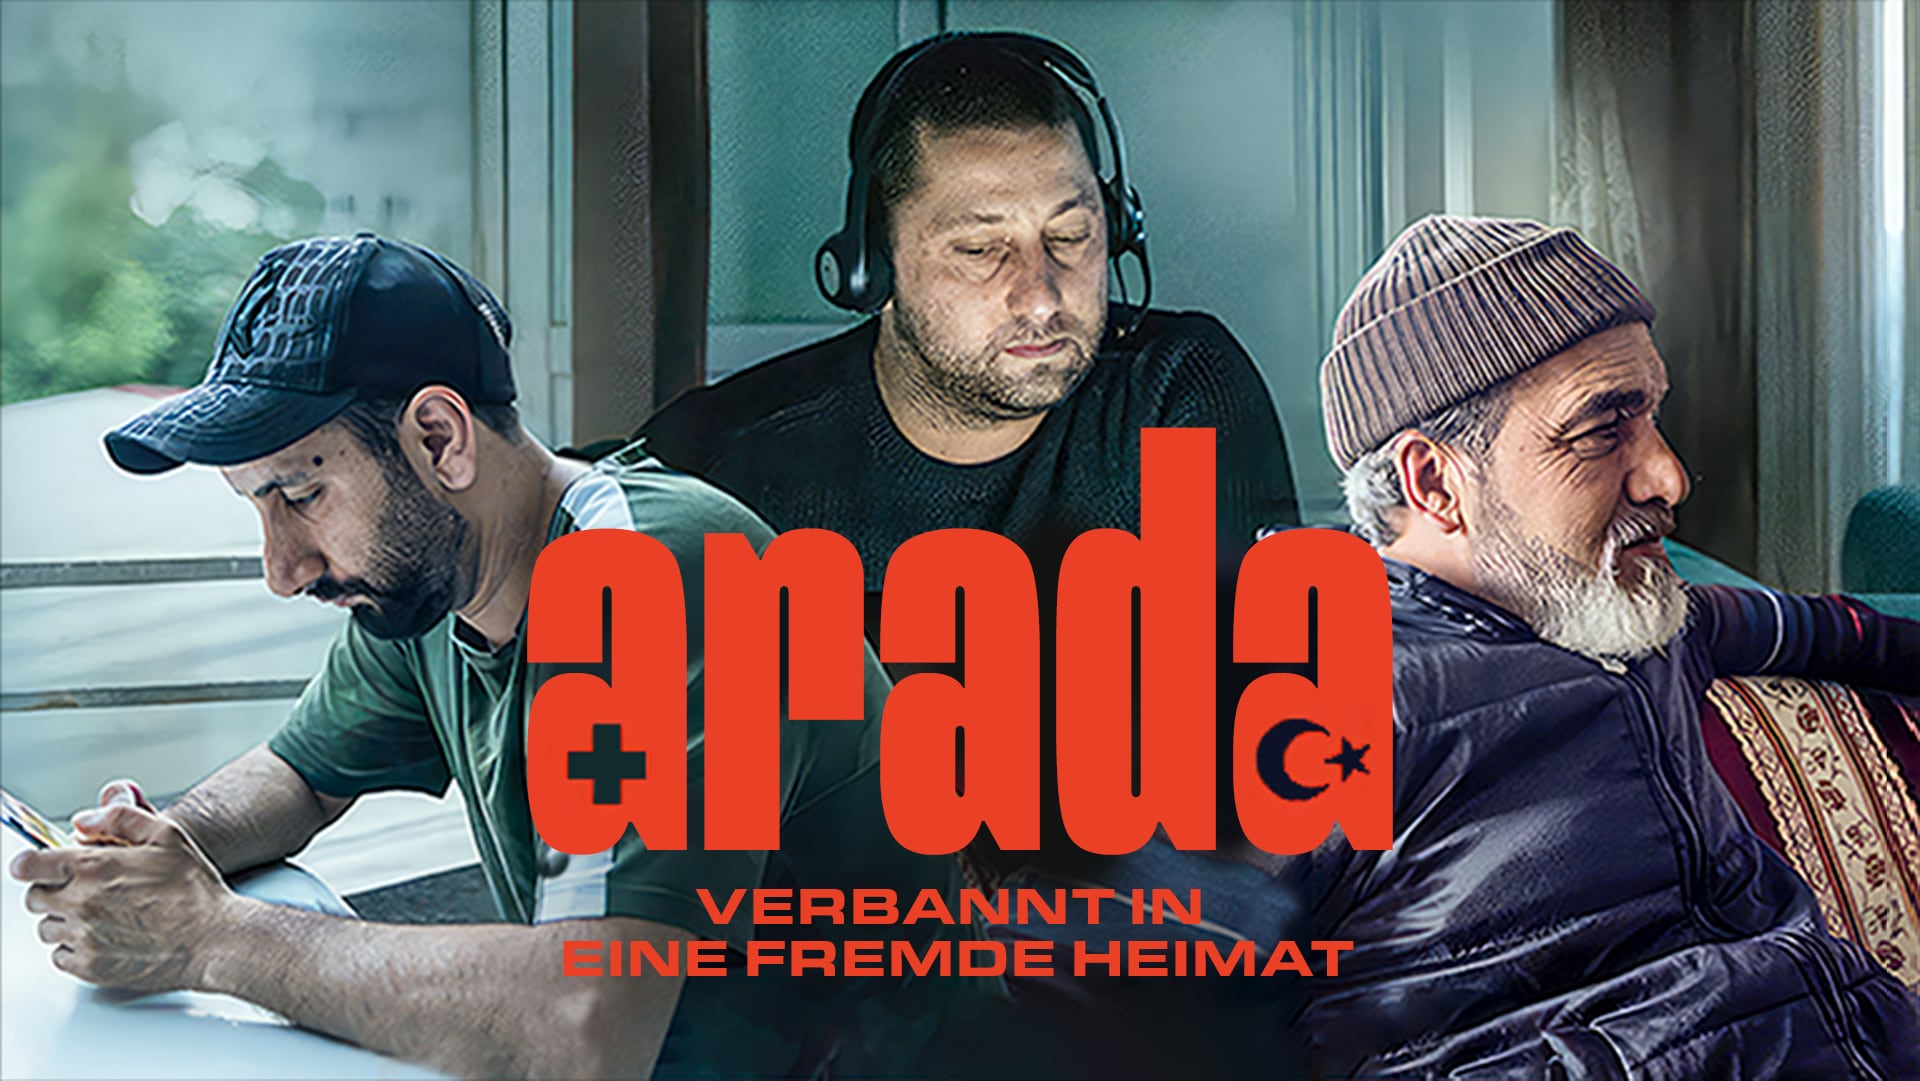 Arada – Verbannt in eine fremde Heimat